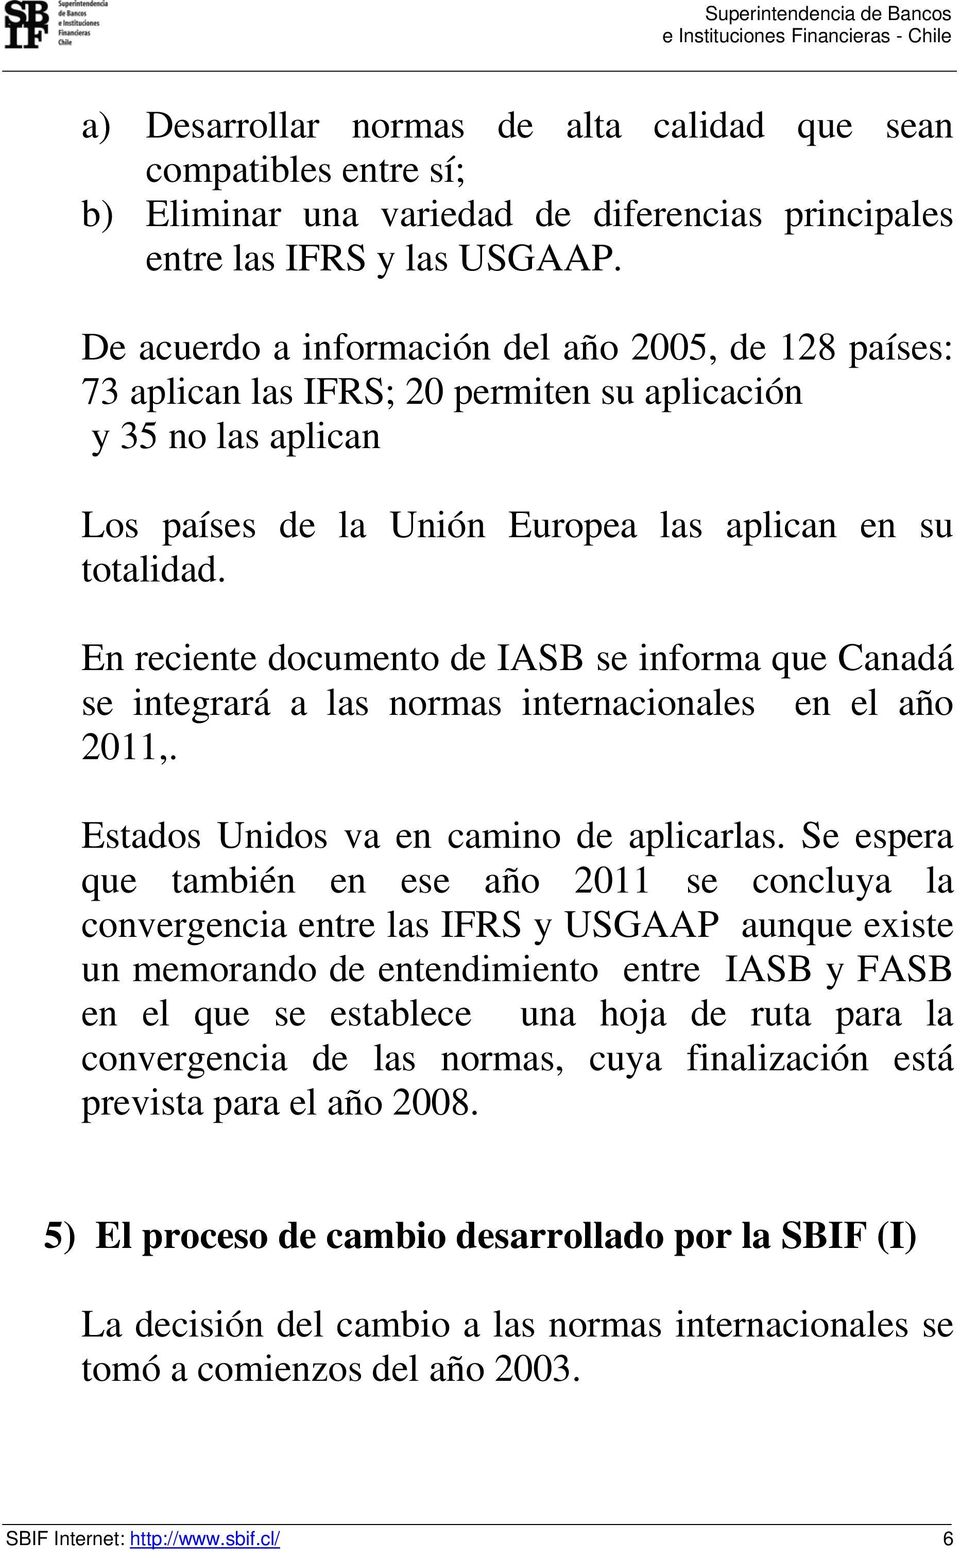 En reciente documento de IASB se informa que Canadá se integrará a las normas internacionales en el año 2011,. Estados Unidos va en camino de aplicarlas.